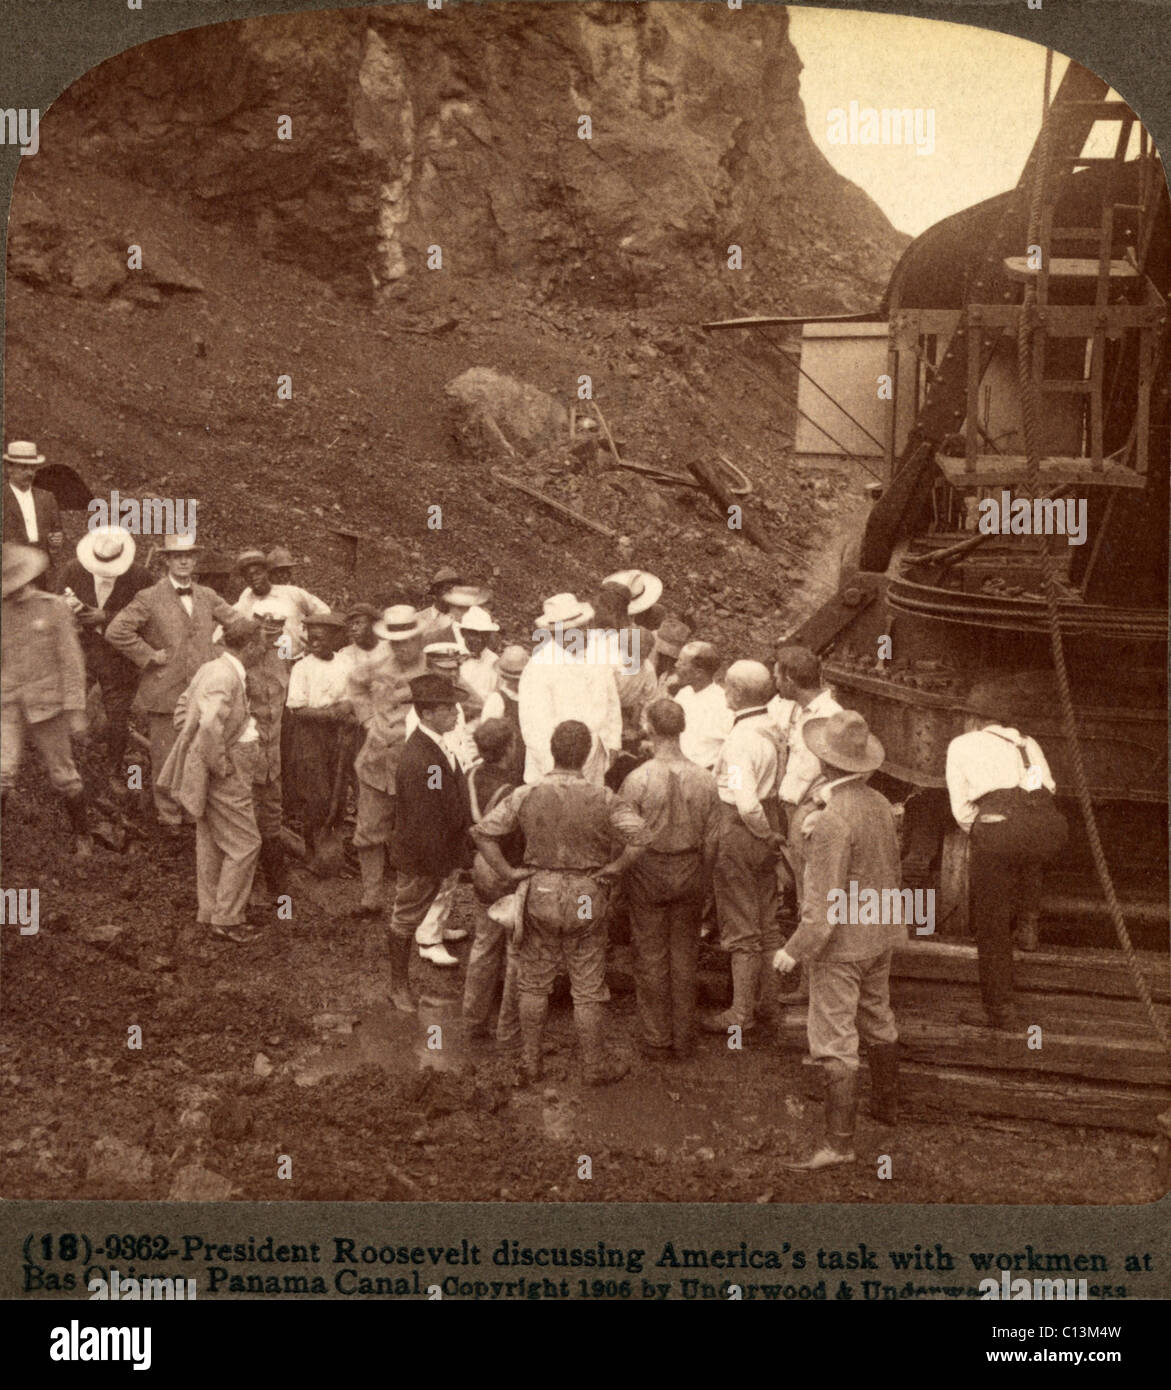 Präsident Roosevelt Amerikas Aufgabe mit Arbeiter auf Bas Obispo, Panama-Kanal auf 31 November 1906 zu diskutieren. Stockfoto